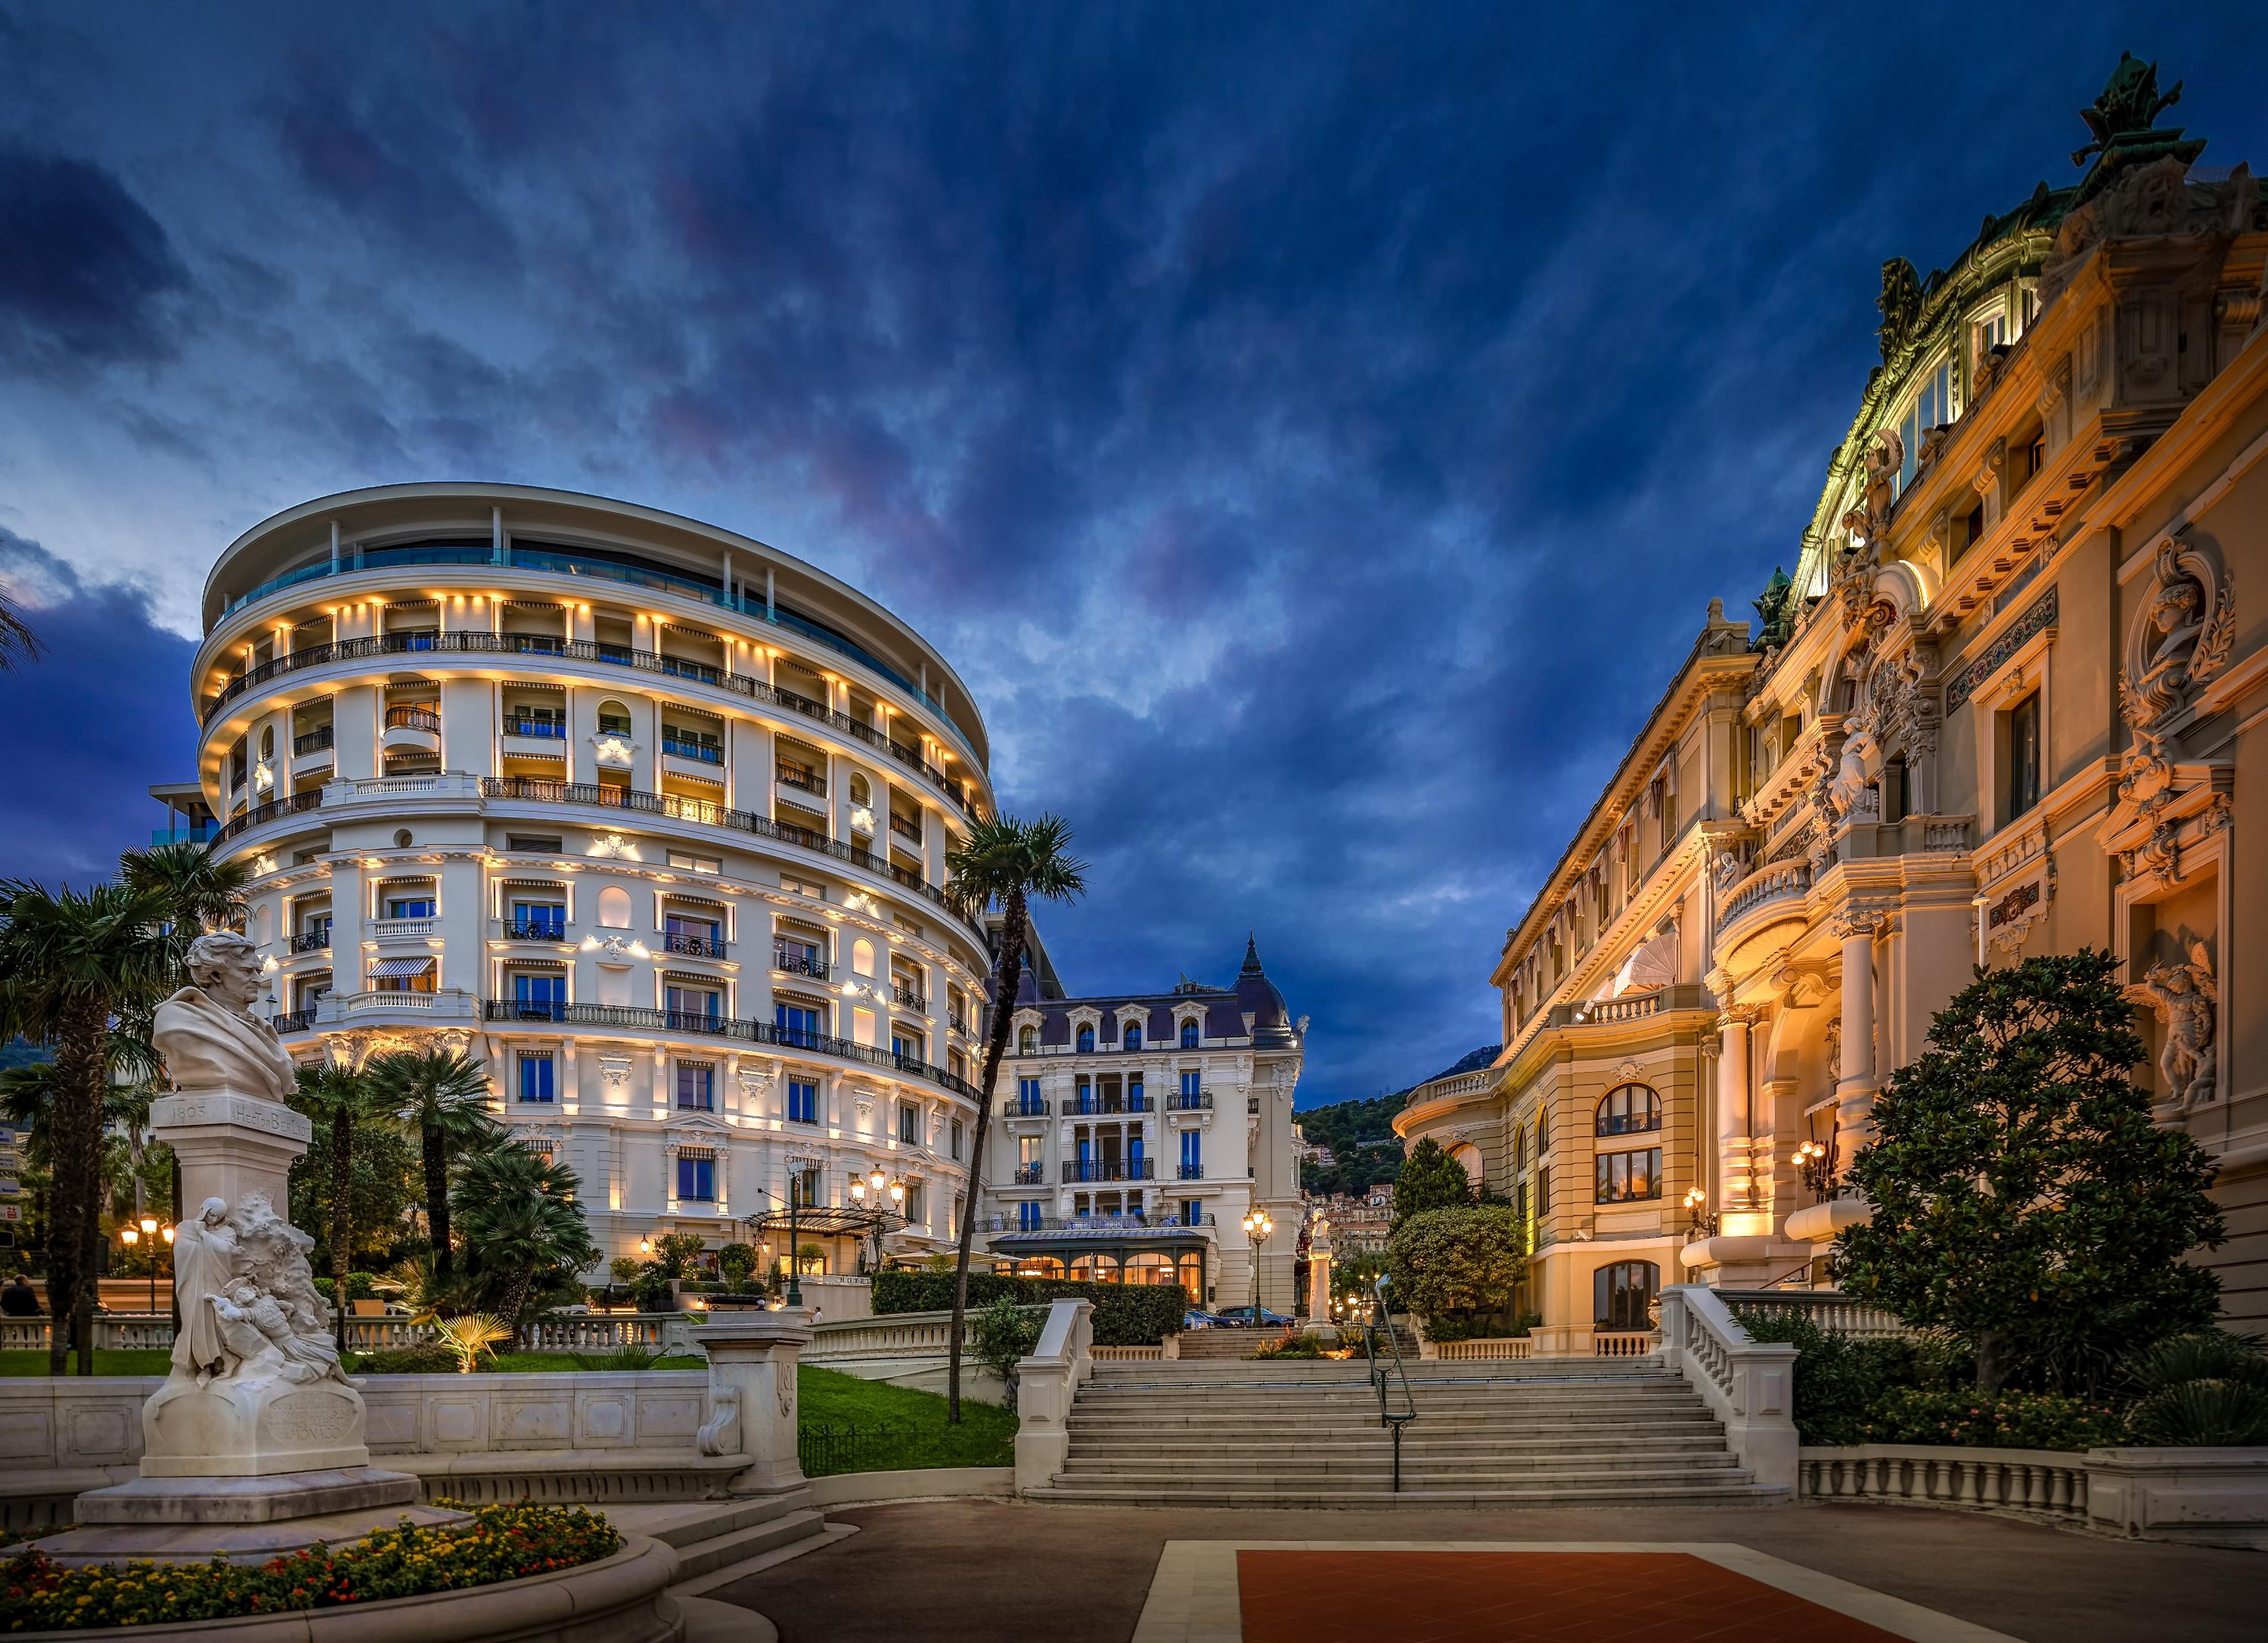 Hotel de Paris Monte-Carlo - Monte Carlo, Monaco - Hotel in Monaco ...